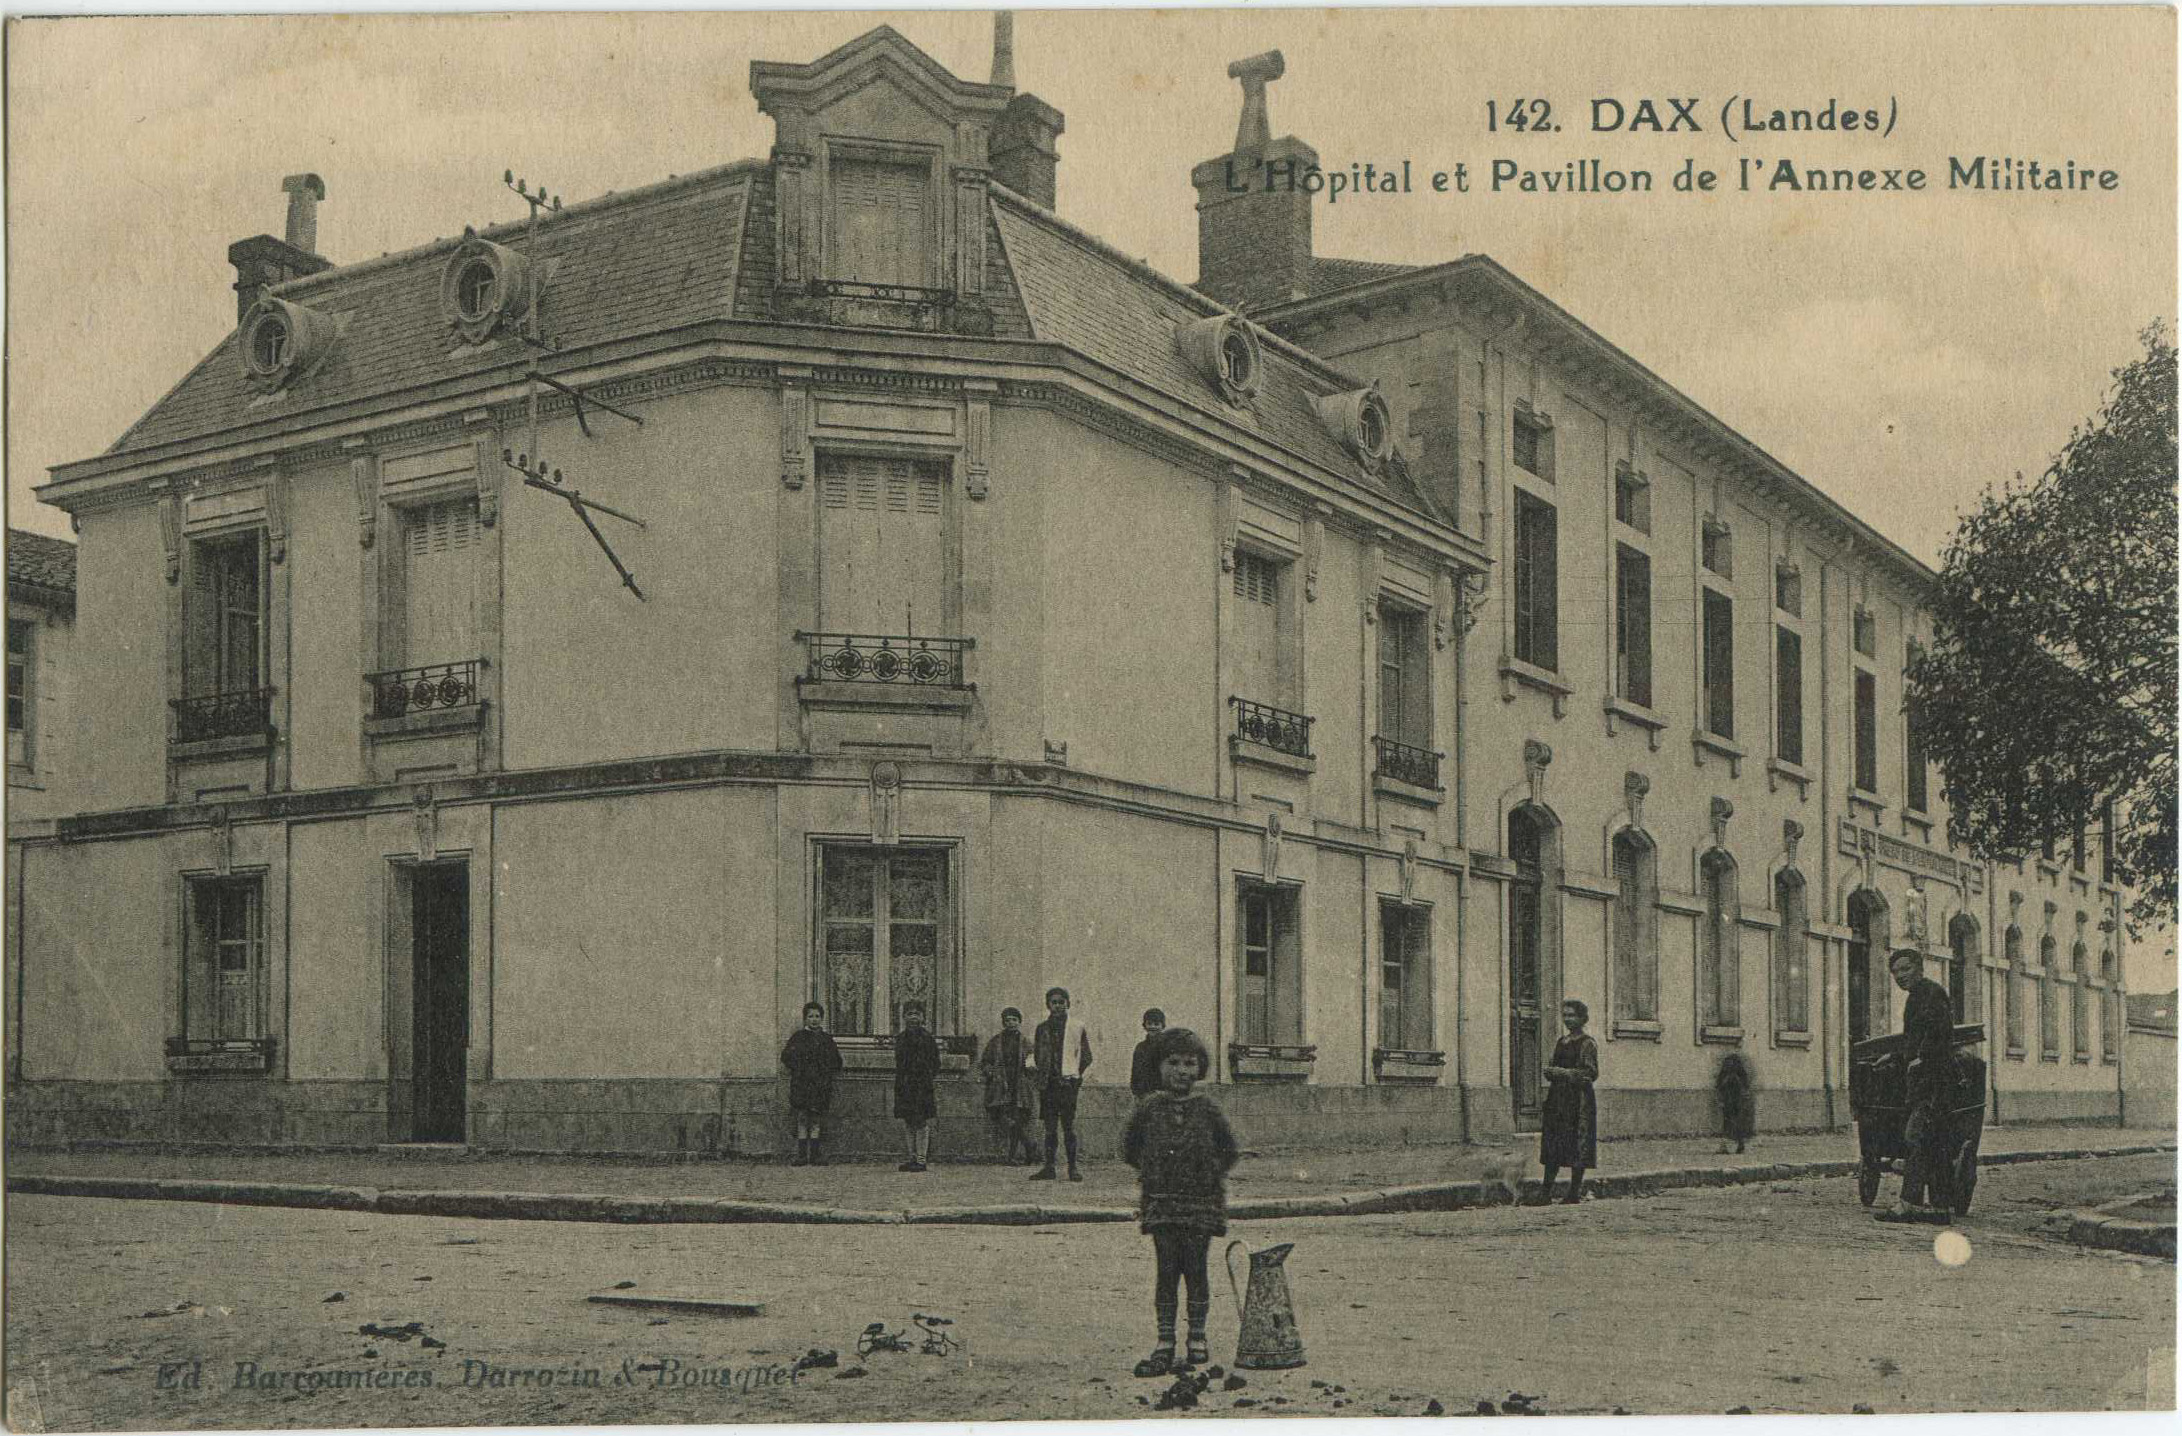 Dax - L'Hôpital et Pavillon de l'Annexe Militaire